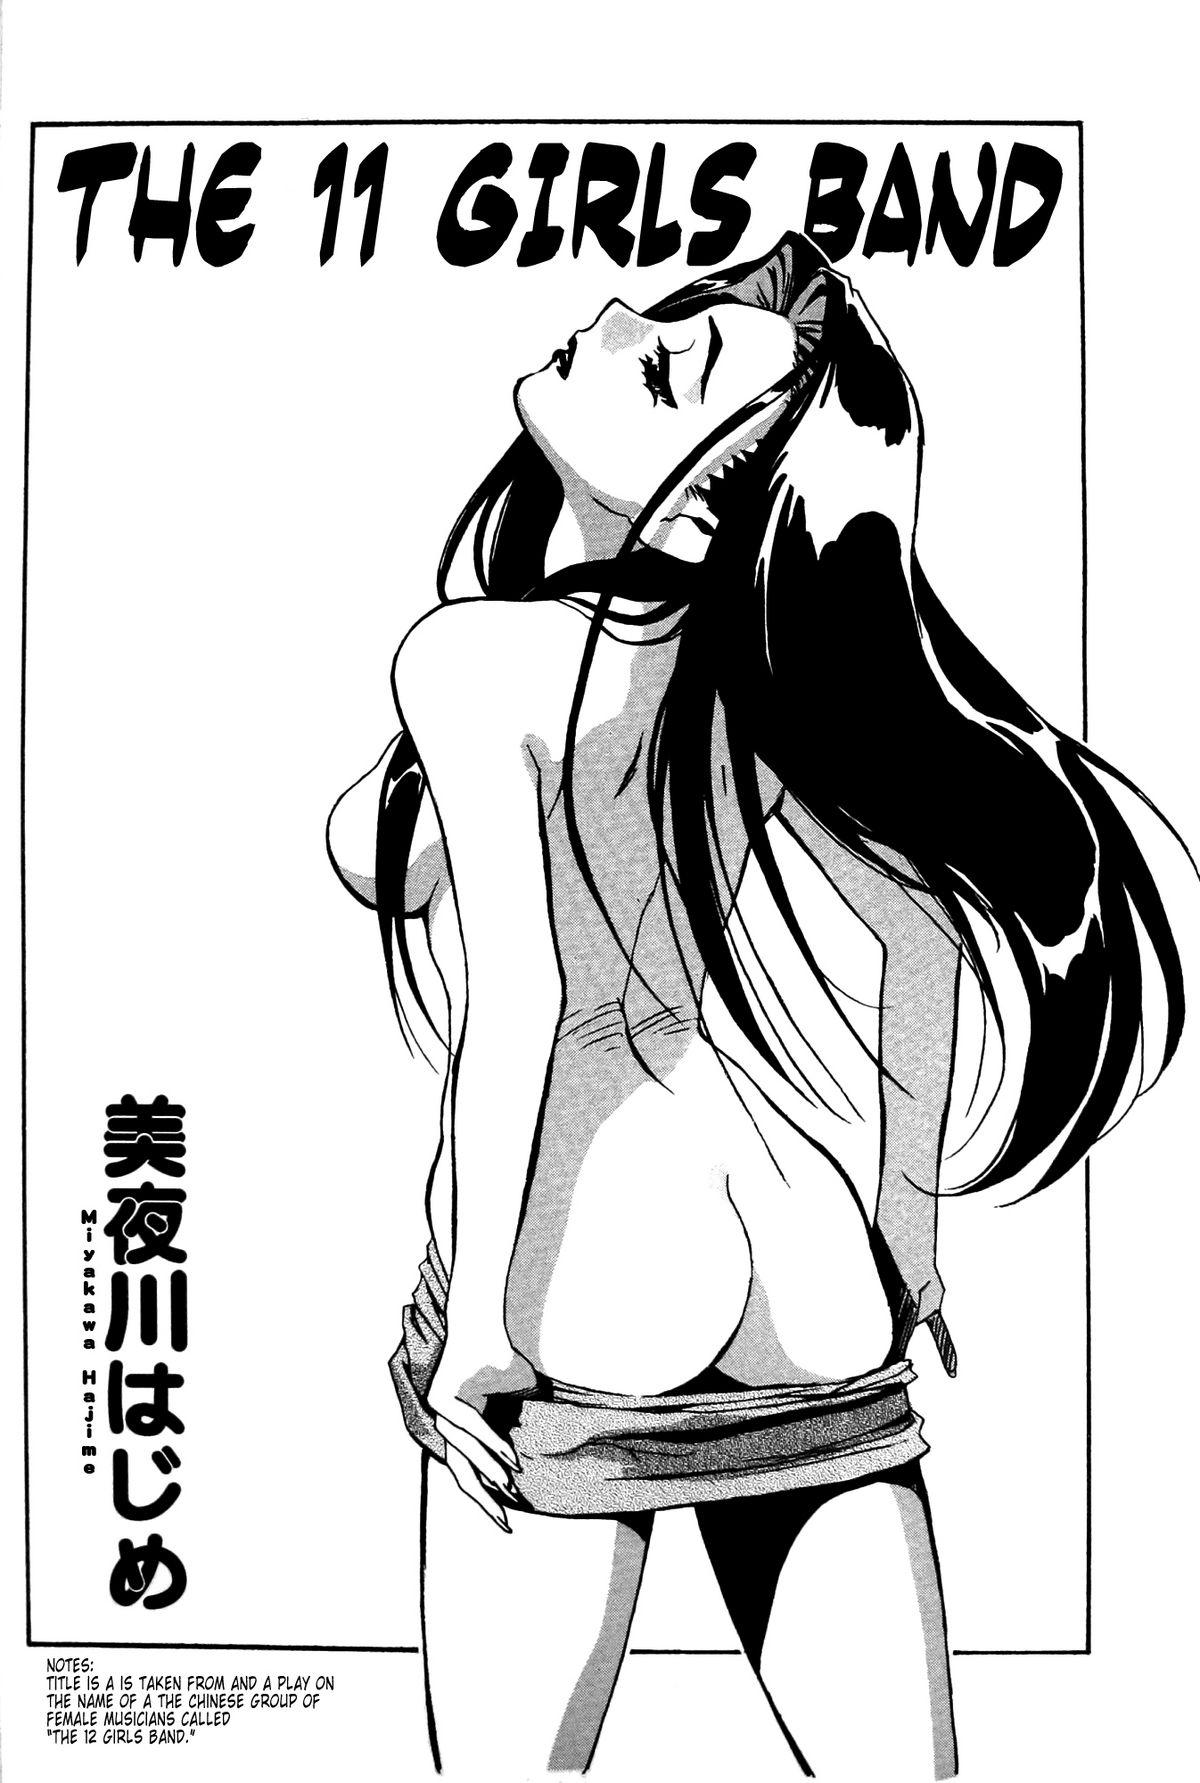 Transvestite Ianryokou Toujitsu No Yoru 4 - Tenchi muyo Tenchi muyo gxp Animation - Page 3